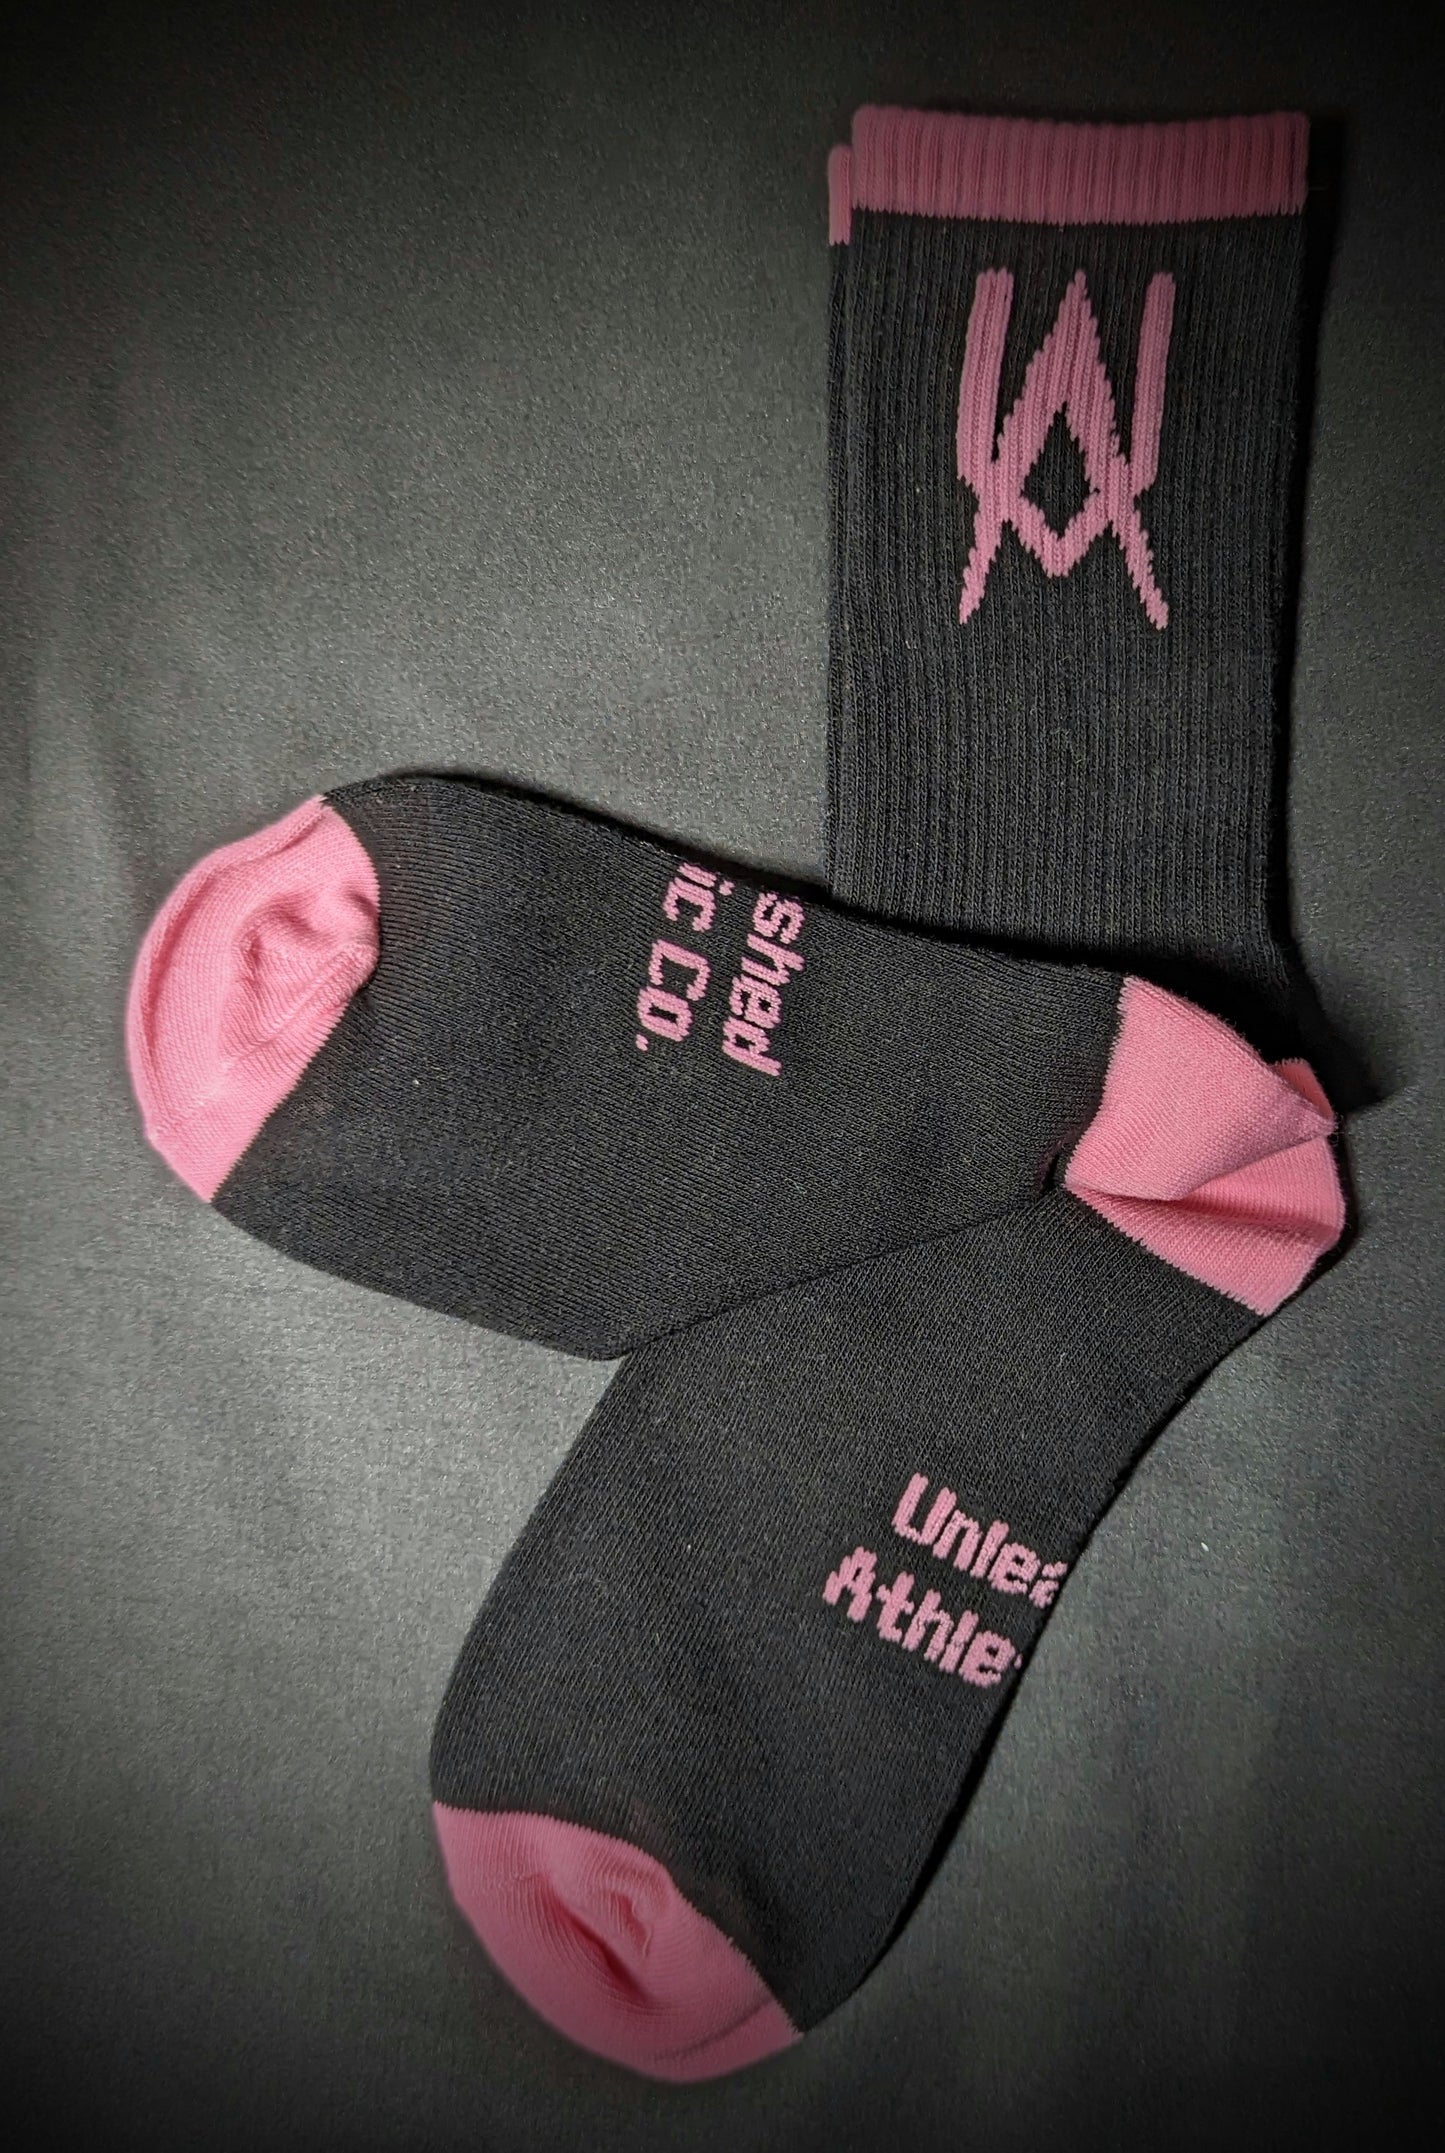 Unleashed Signature Socks Black/Pink